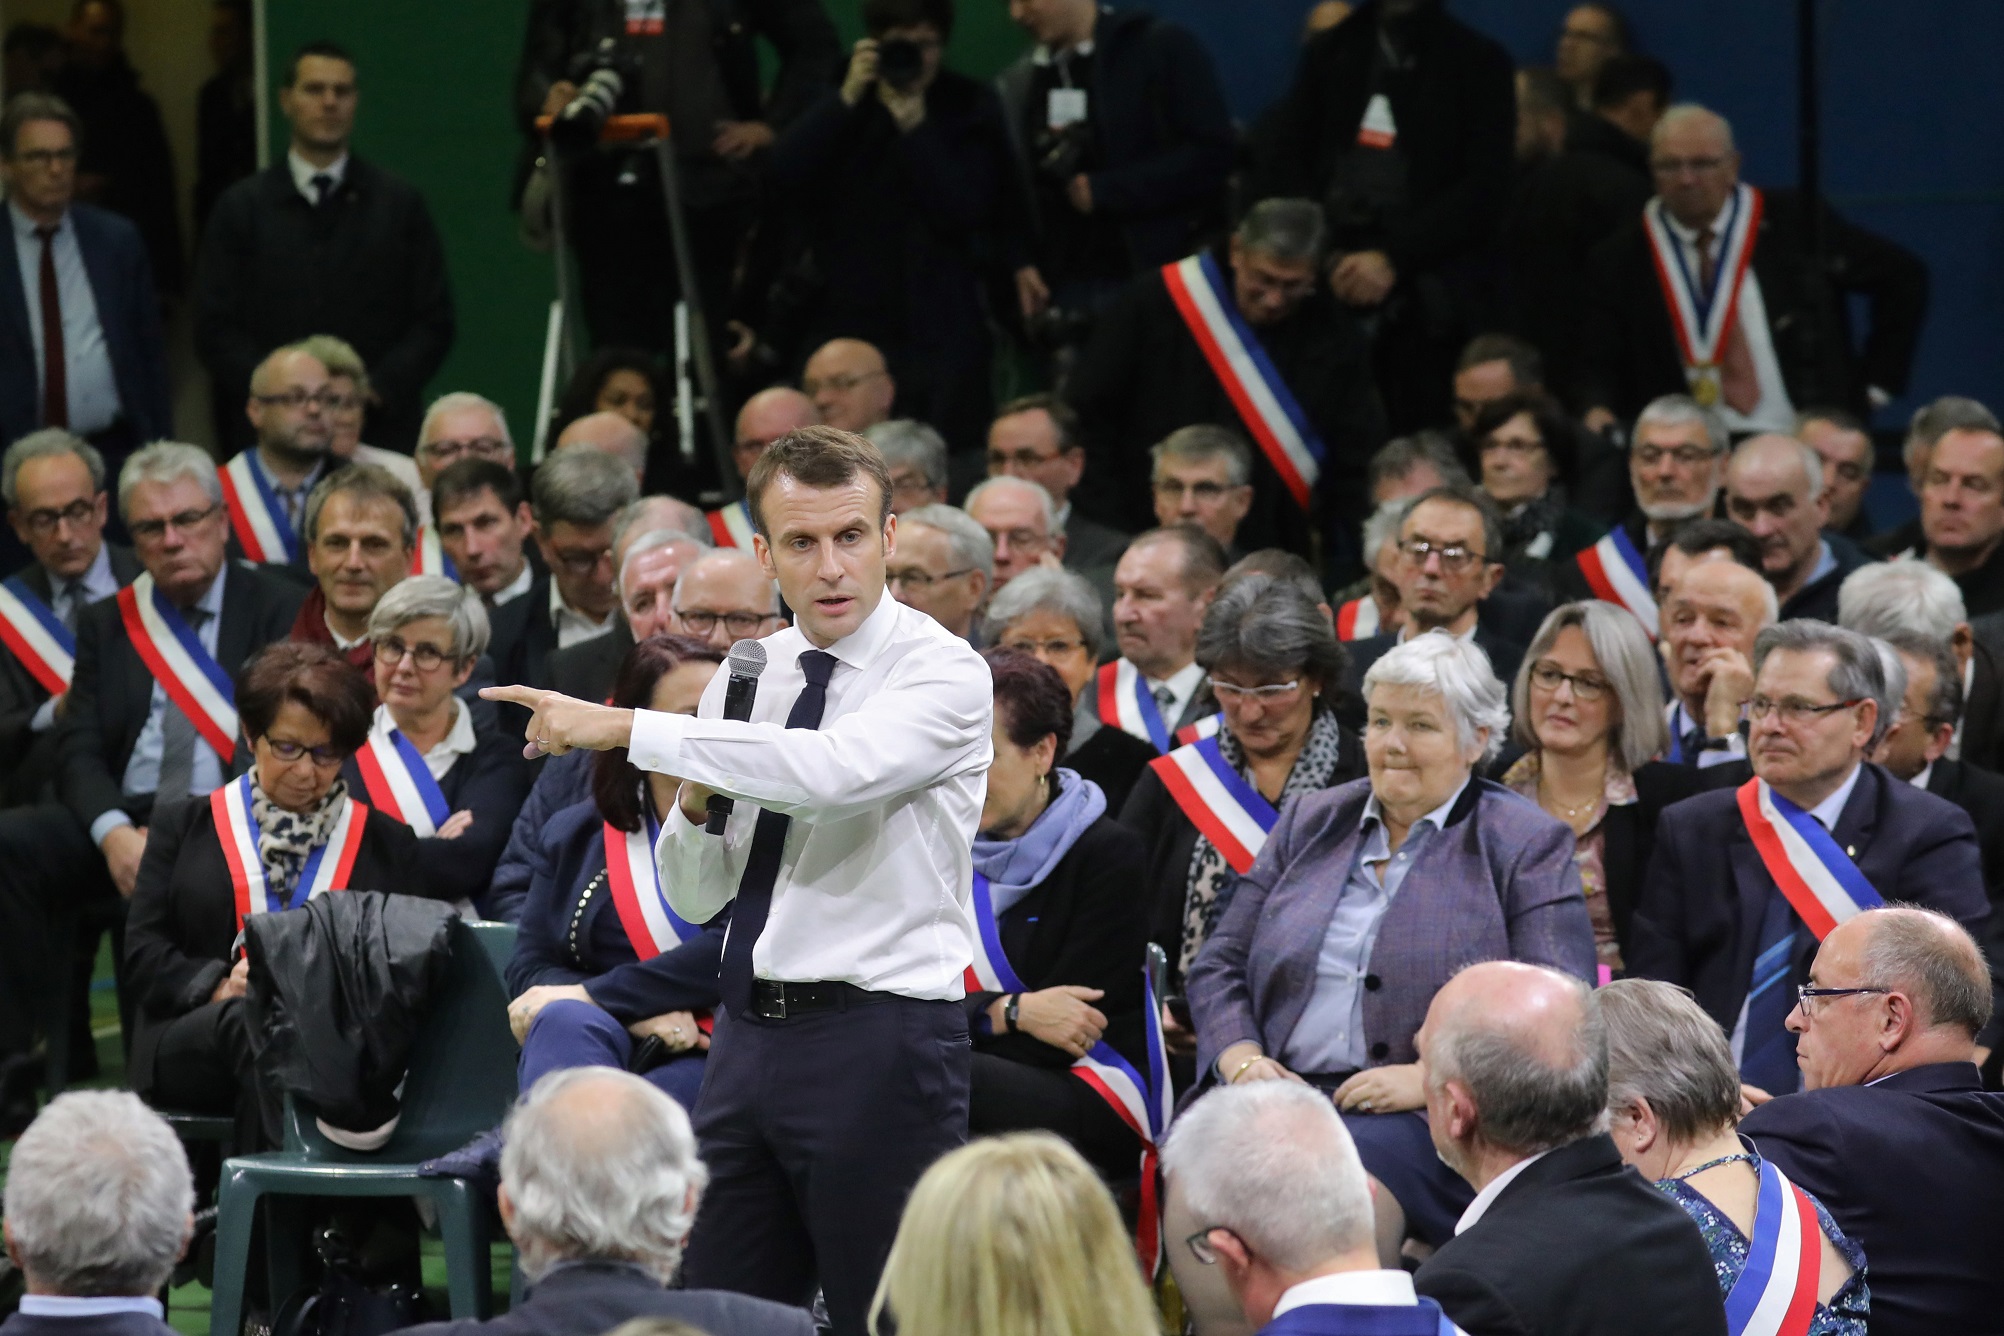 Décentralisation: Macron rejoue le grand débat national